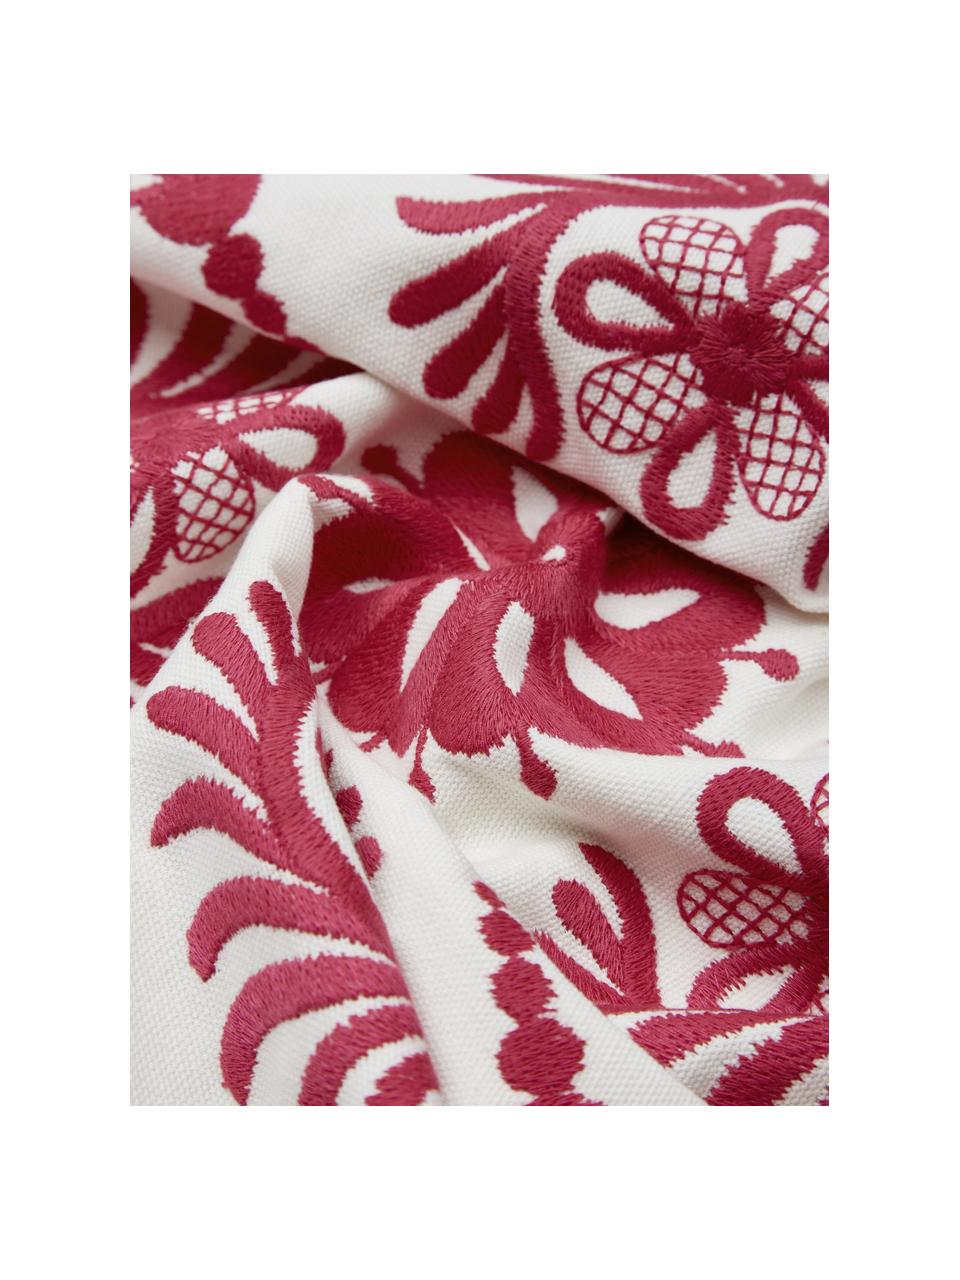 Baumwoll-Kissenhülle Folk mit besticktem Muster, 100% Baumwolle, Pink, Weiß, B 45 x L 45 cm